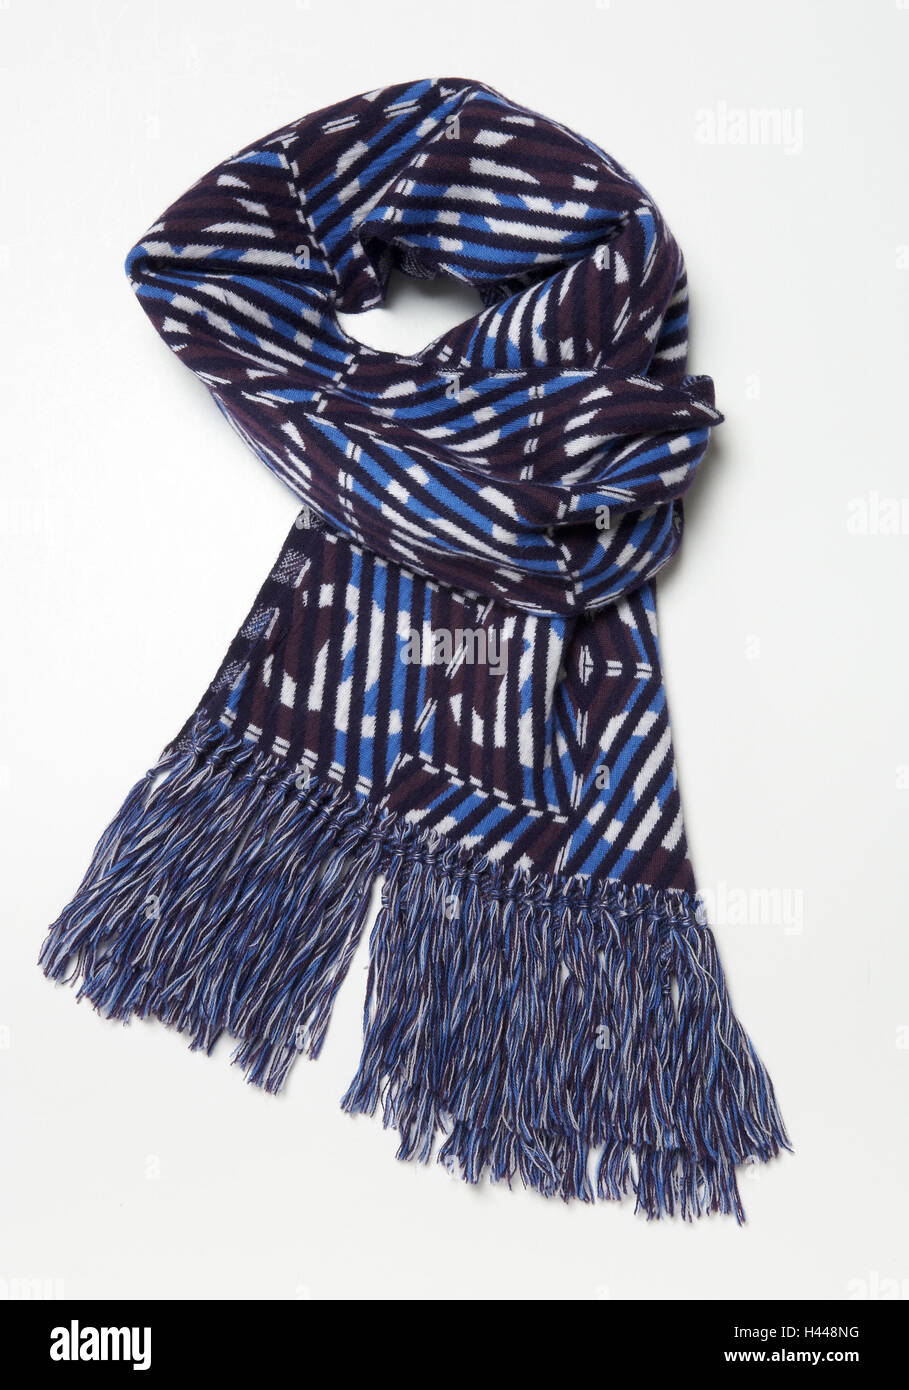 Chanel scarf immagini e fotografie stock ad alta risoluzione - Alamy